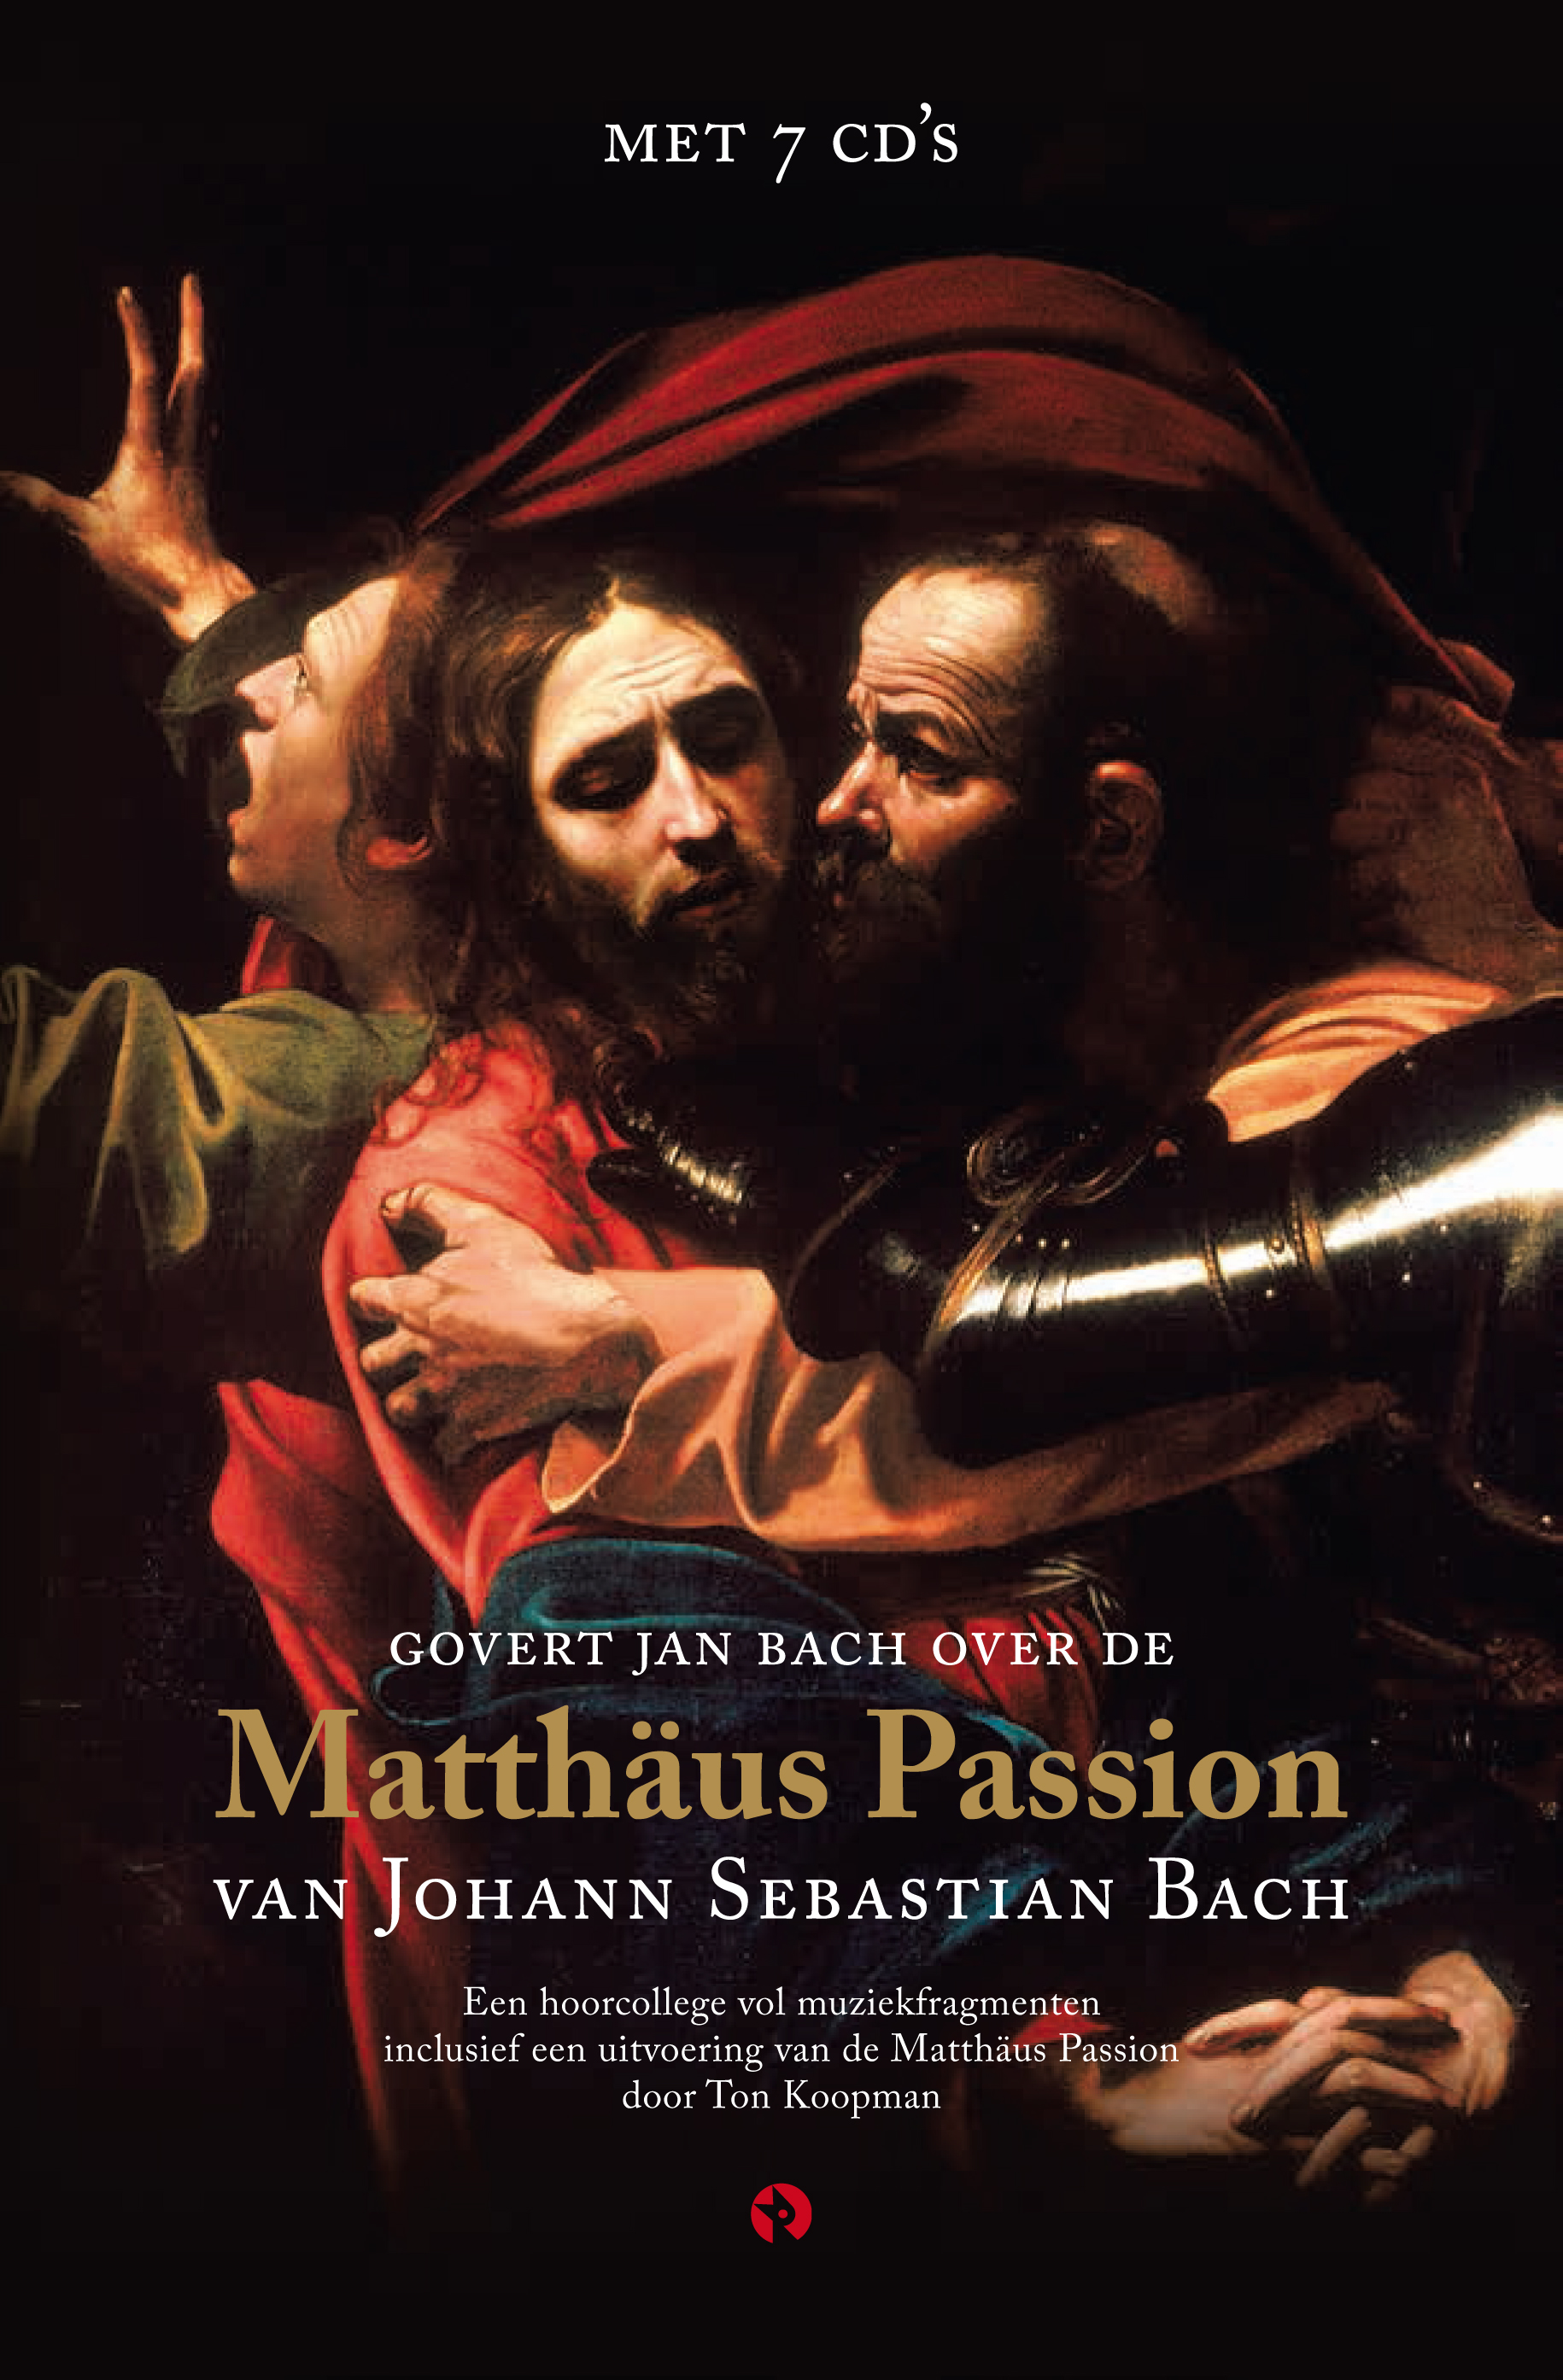 Govert Jan Bach over de Matthäus Passion van Johann Sebastian Bach - Hernieuwde uitgave